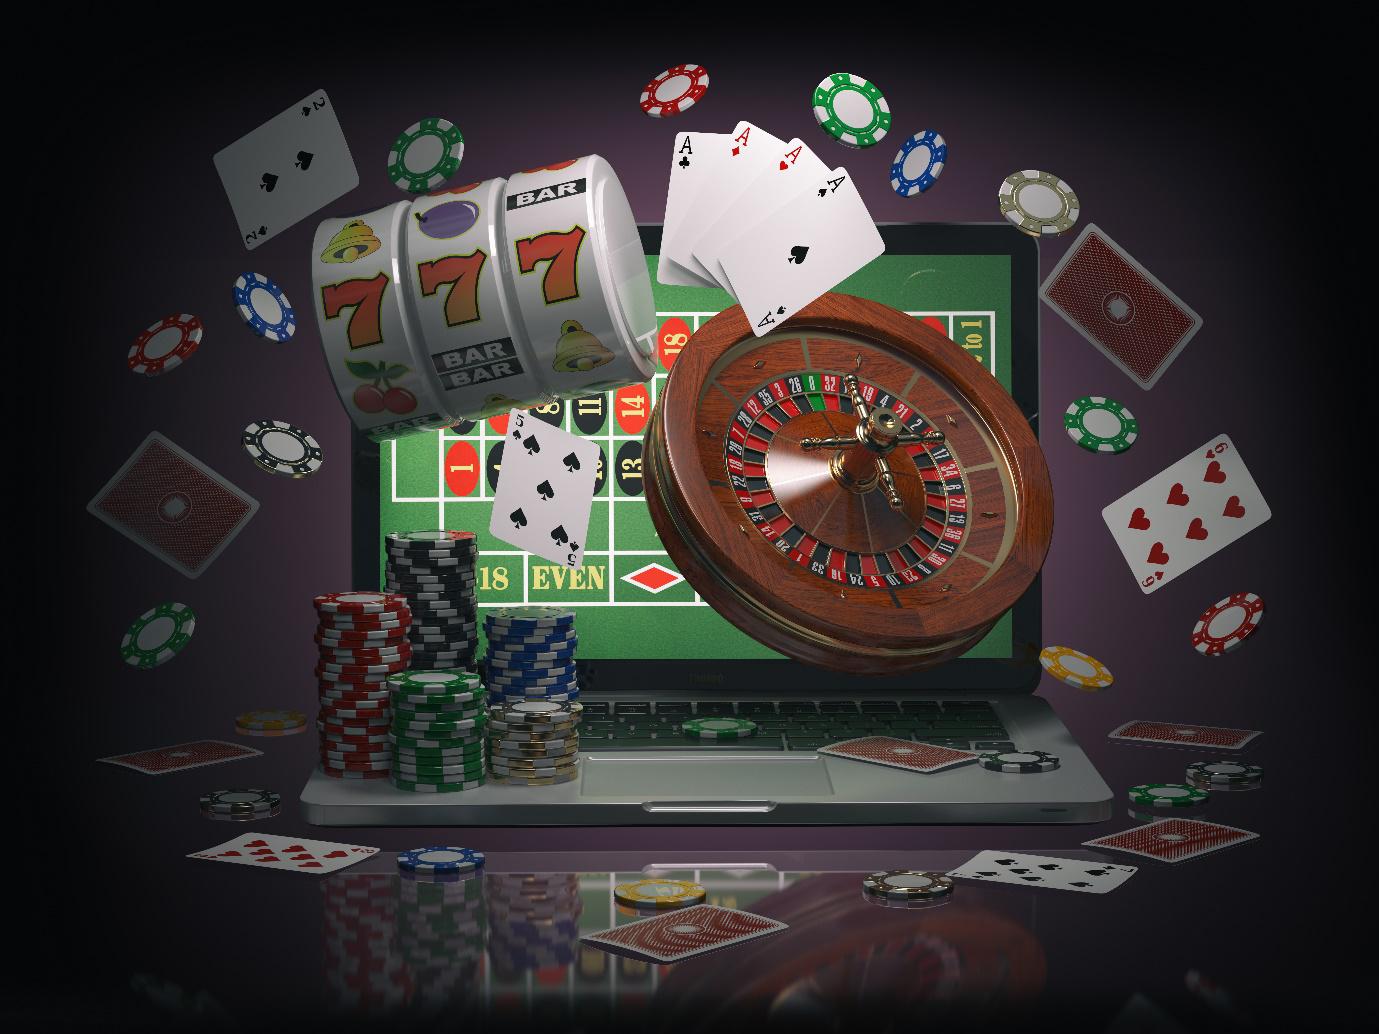 Online Casino FГјr Echtes Geld Ist Der Beste Ort Zum Spielen вЂ“ Mary Foster